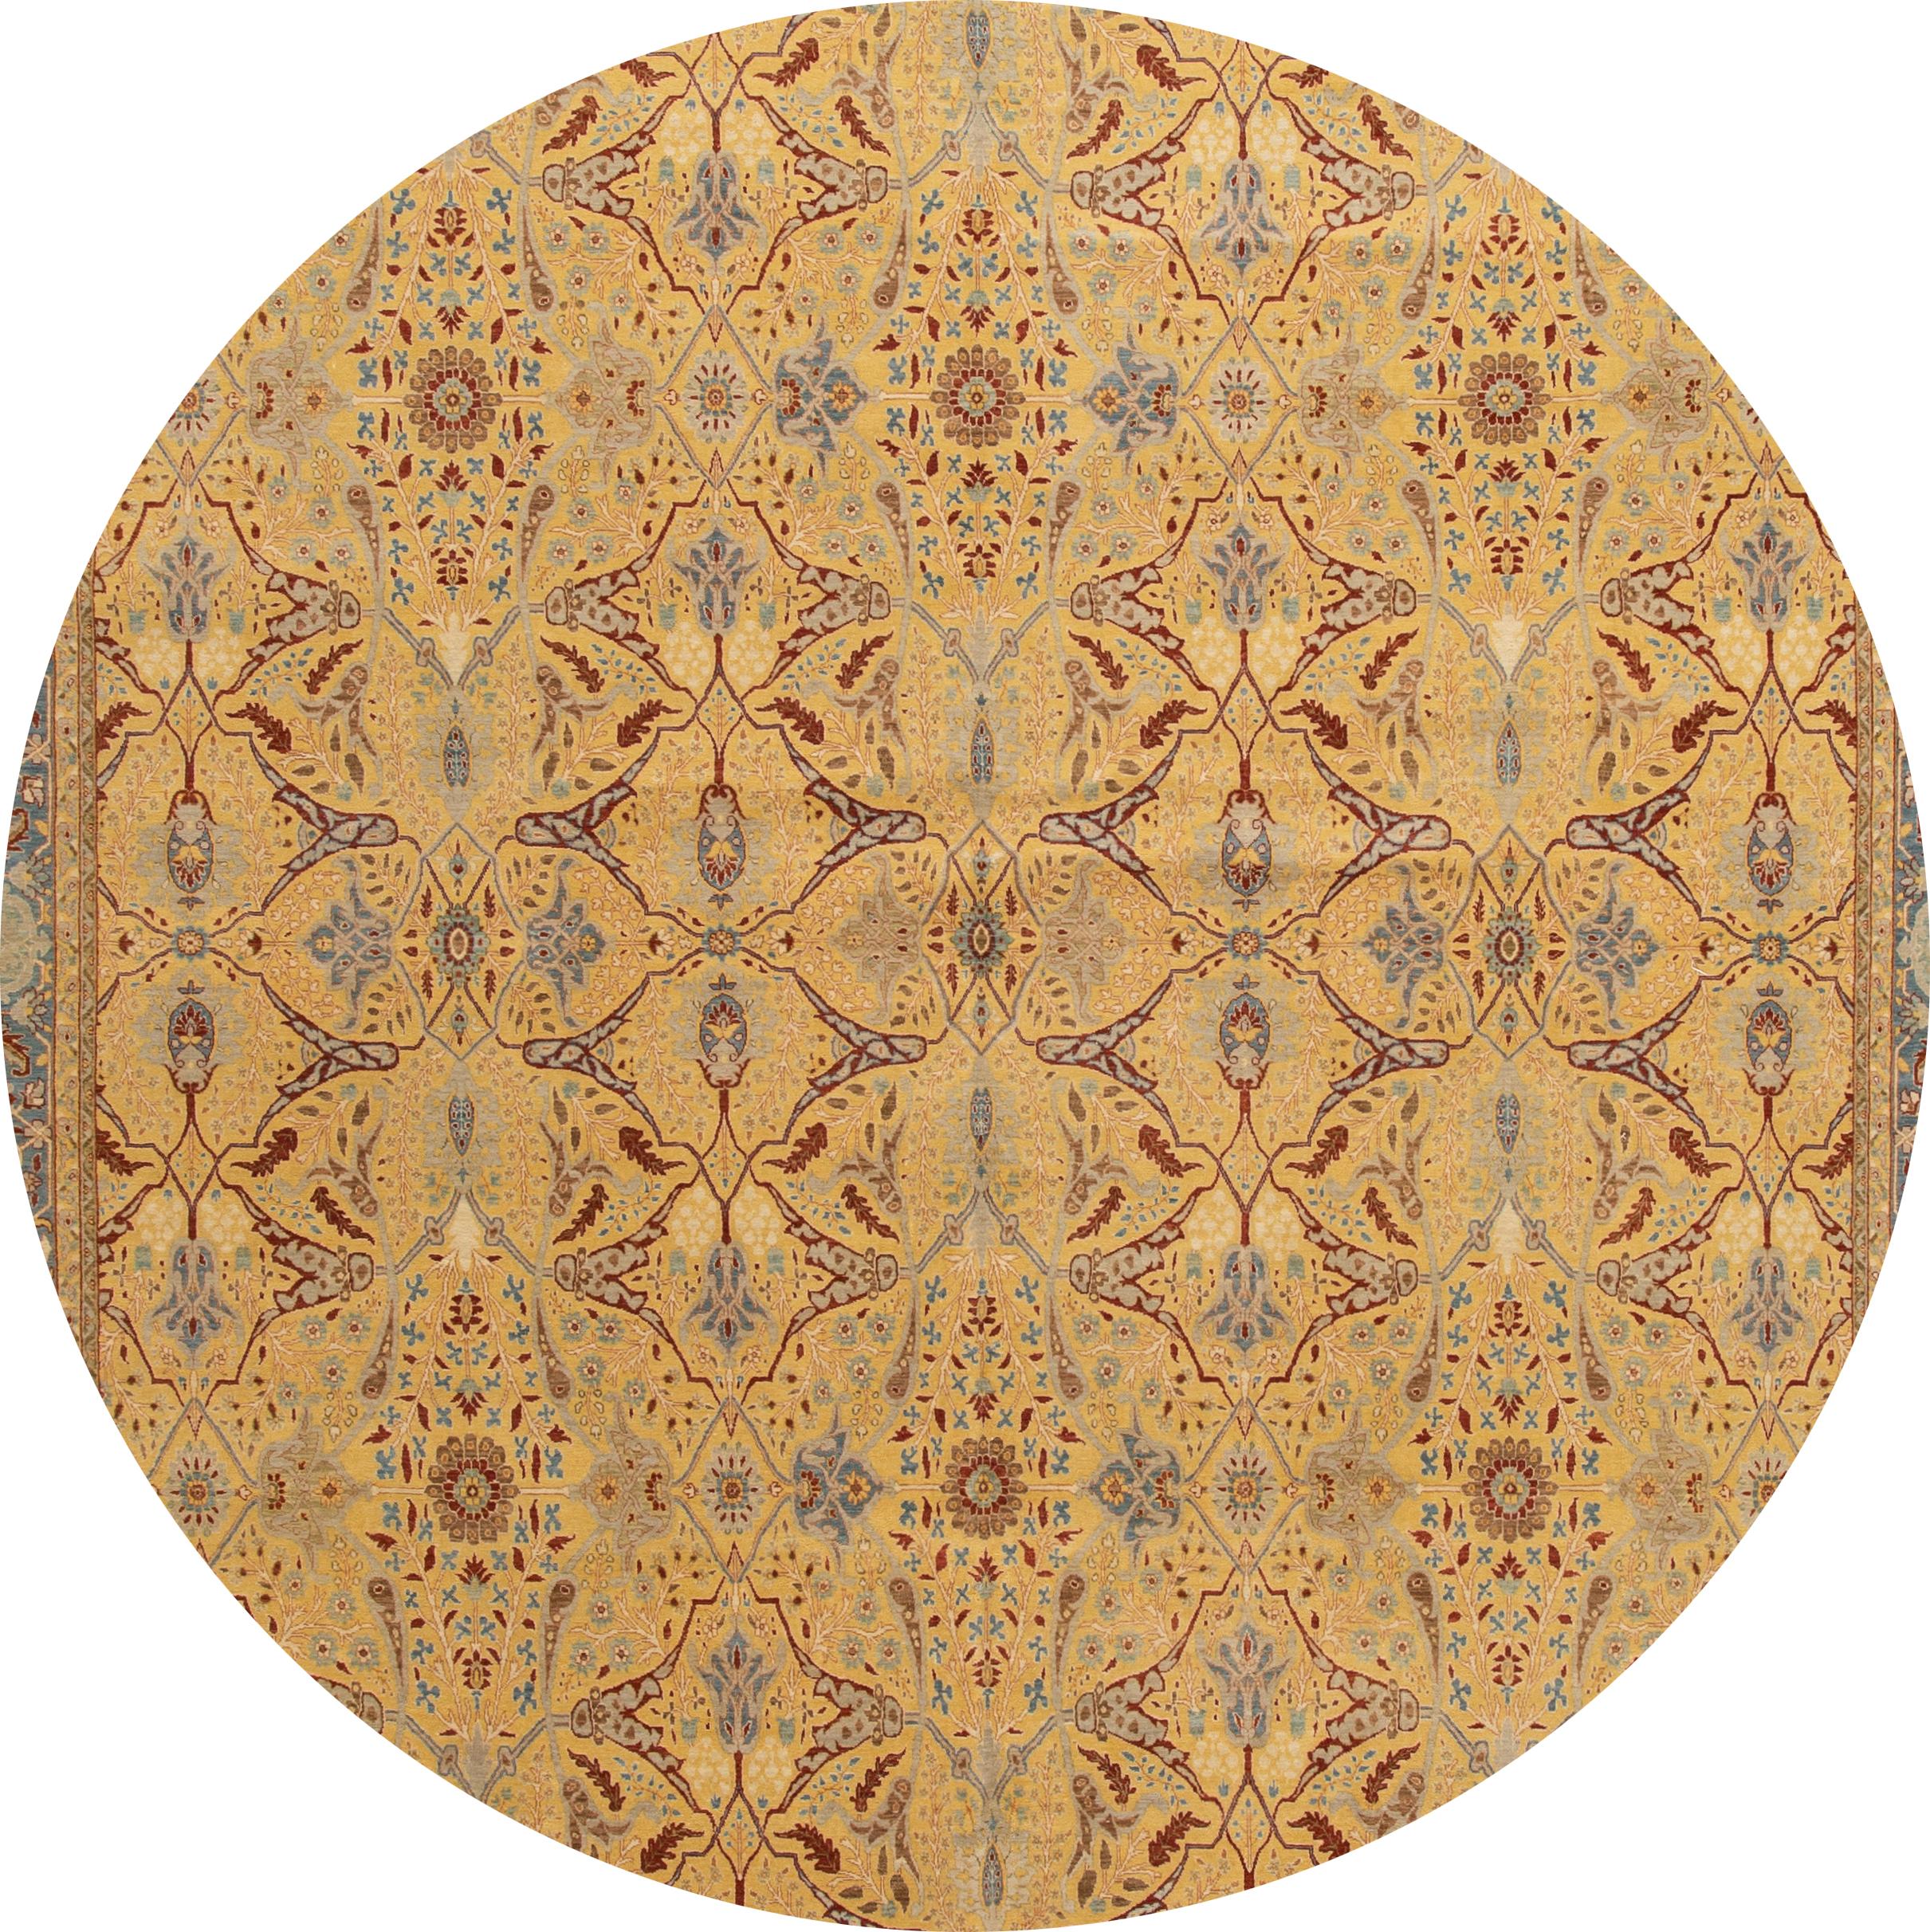 Magnifique tapis indien Tabriz moderne en laine noué à la main. Ce tapis présente un champ jaune avec des accents bleus et bruns dans un motif de médaillon géométrique sur toute la surface. 

Ce tapis mesure 9' 8